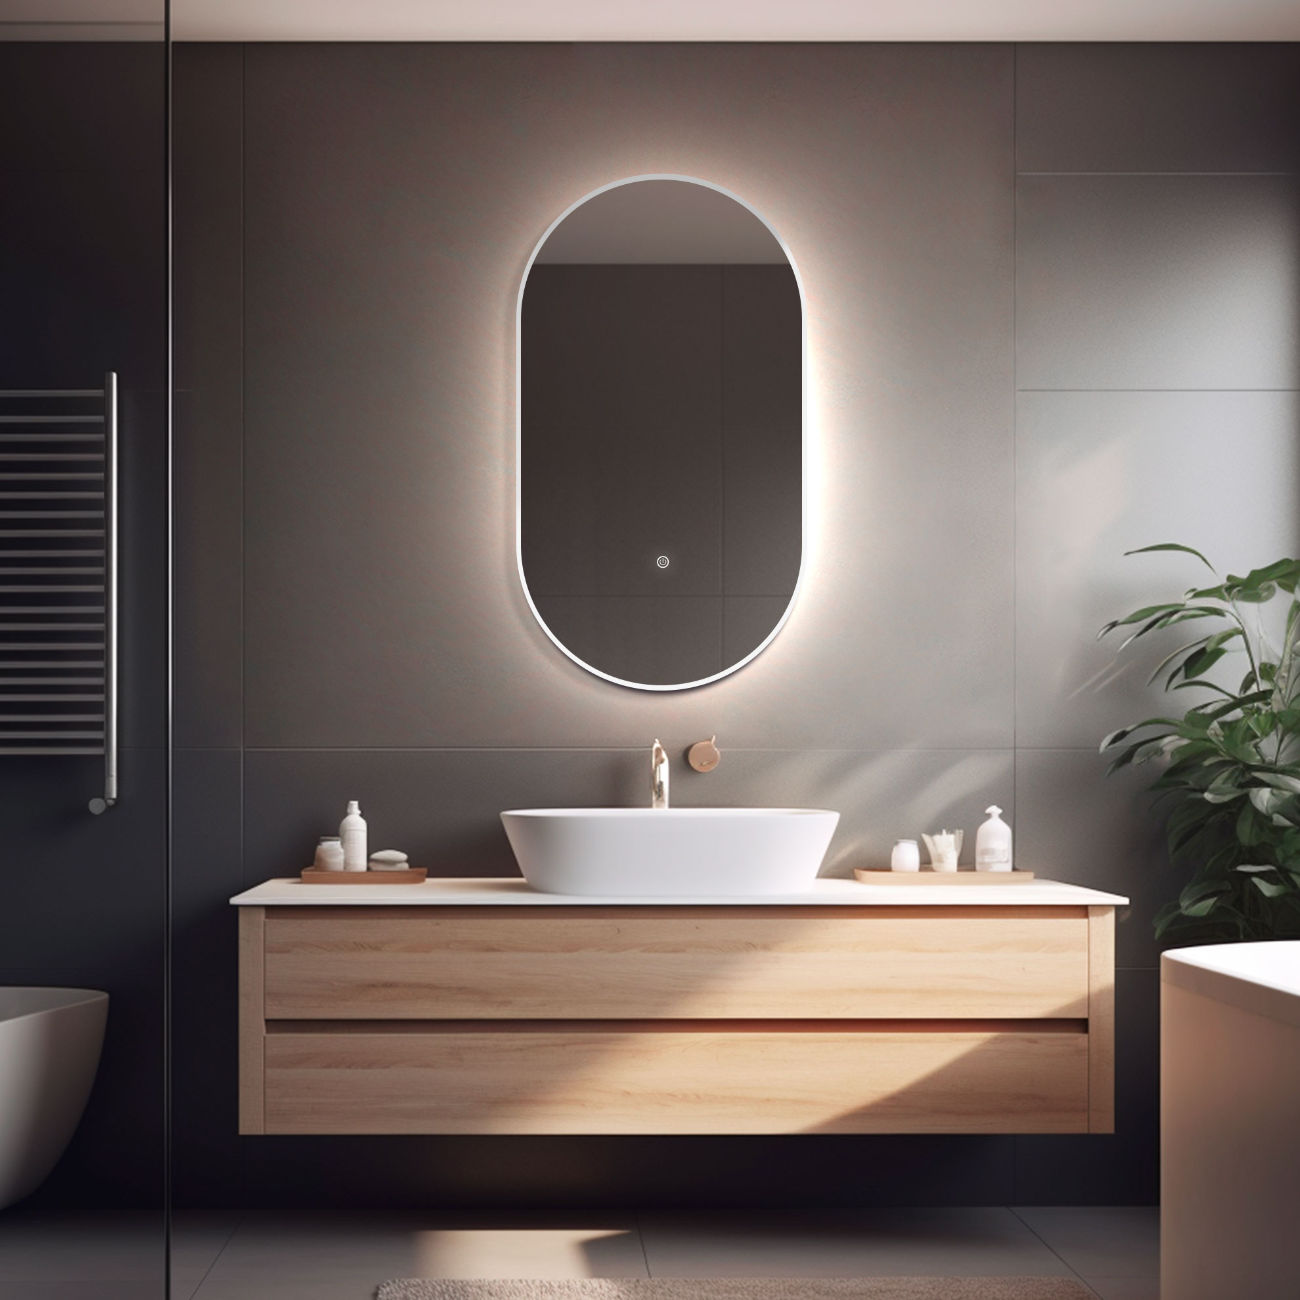 LED Badspiegel, Spiegel mit Beleuchtung, oval Spiegel, Metall Rahmen,Weiß